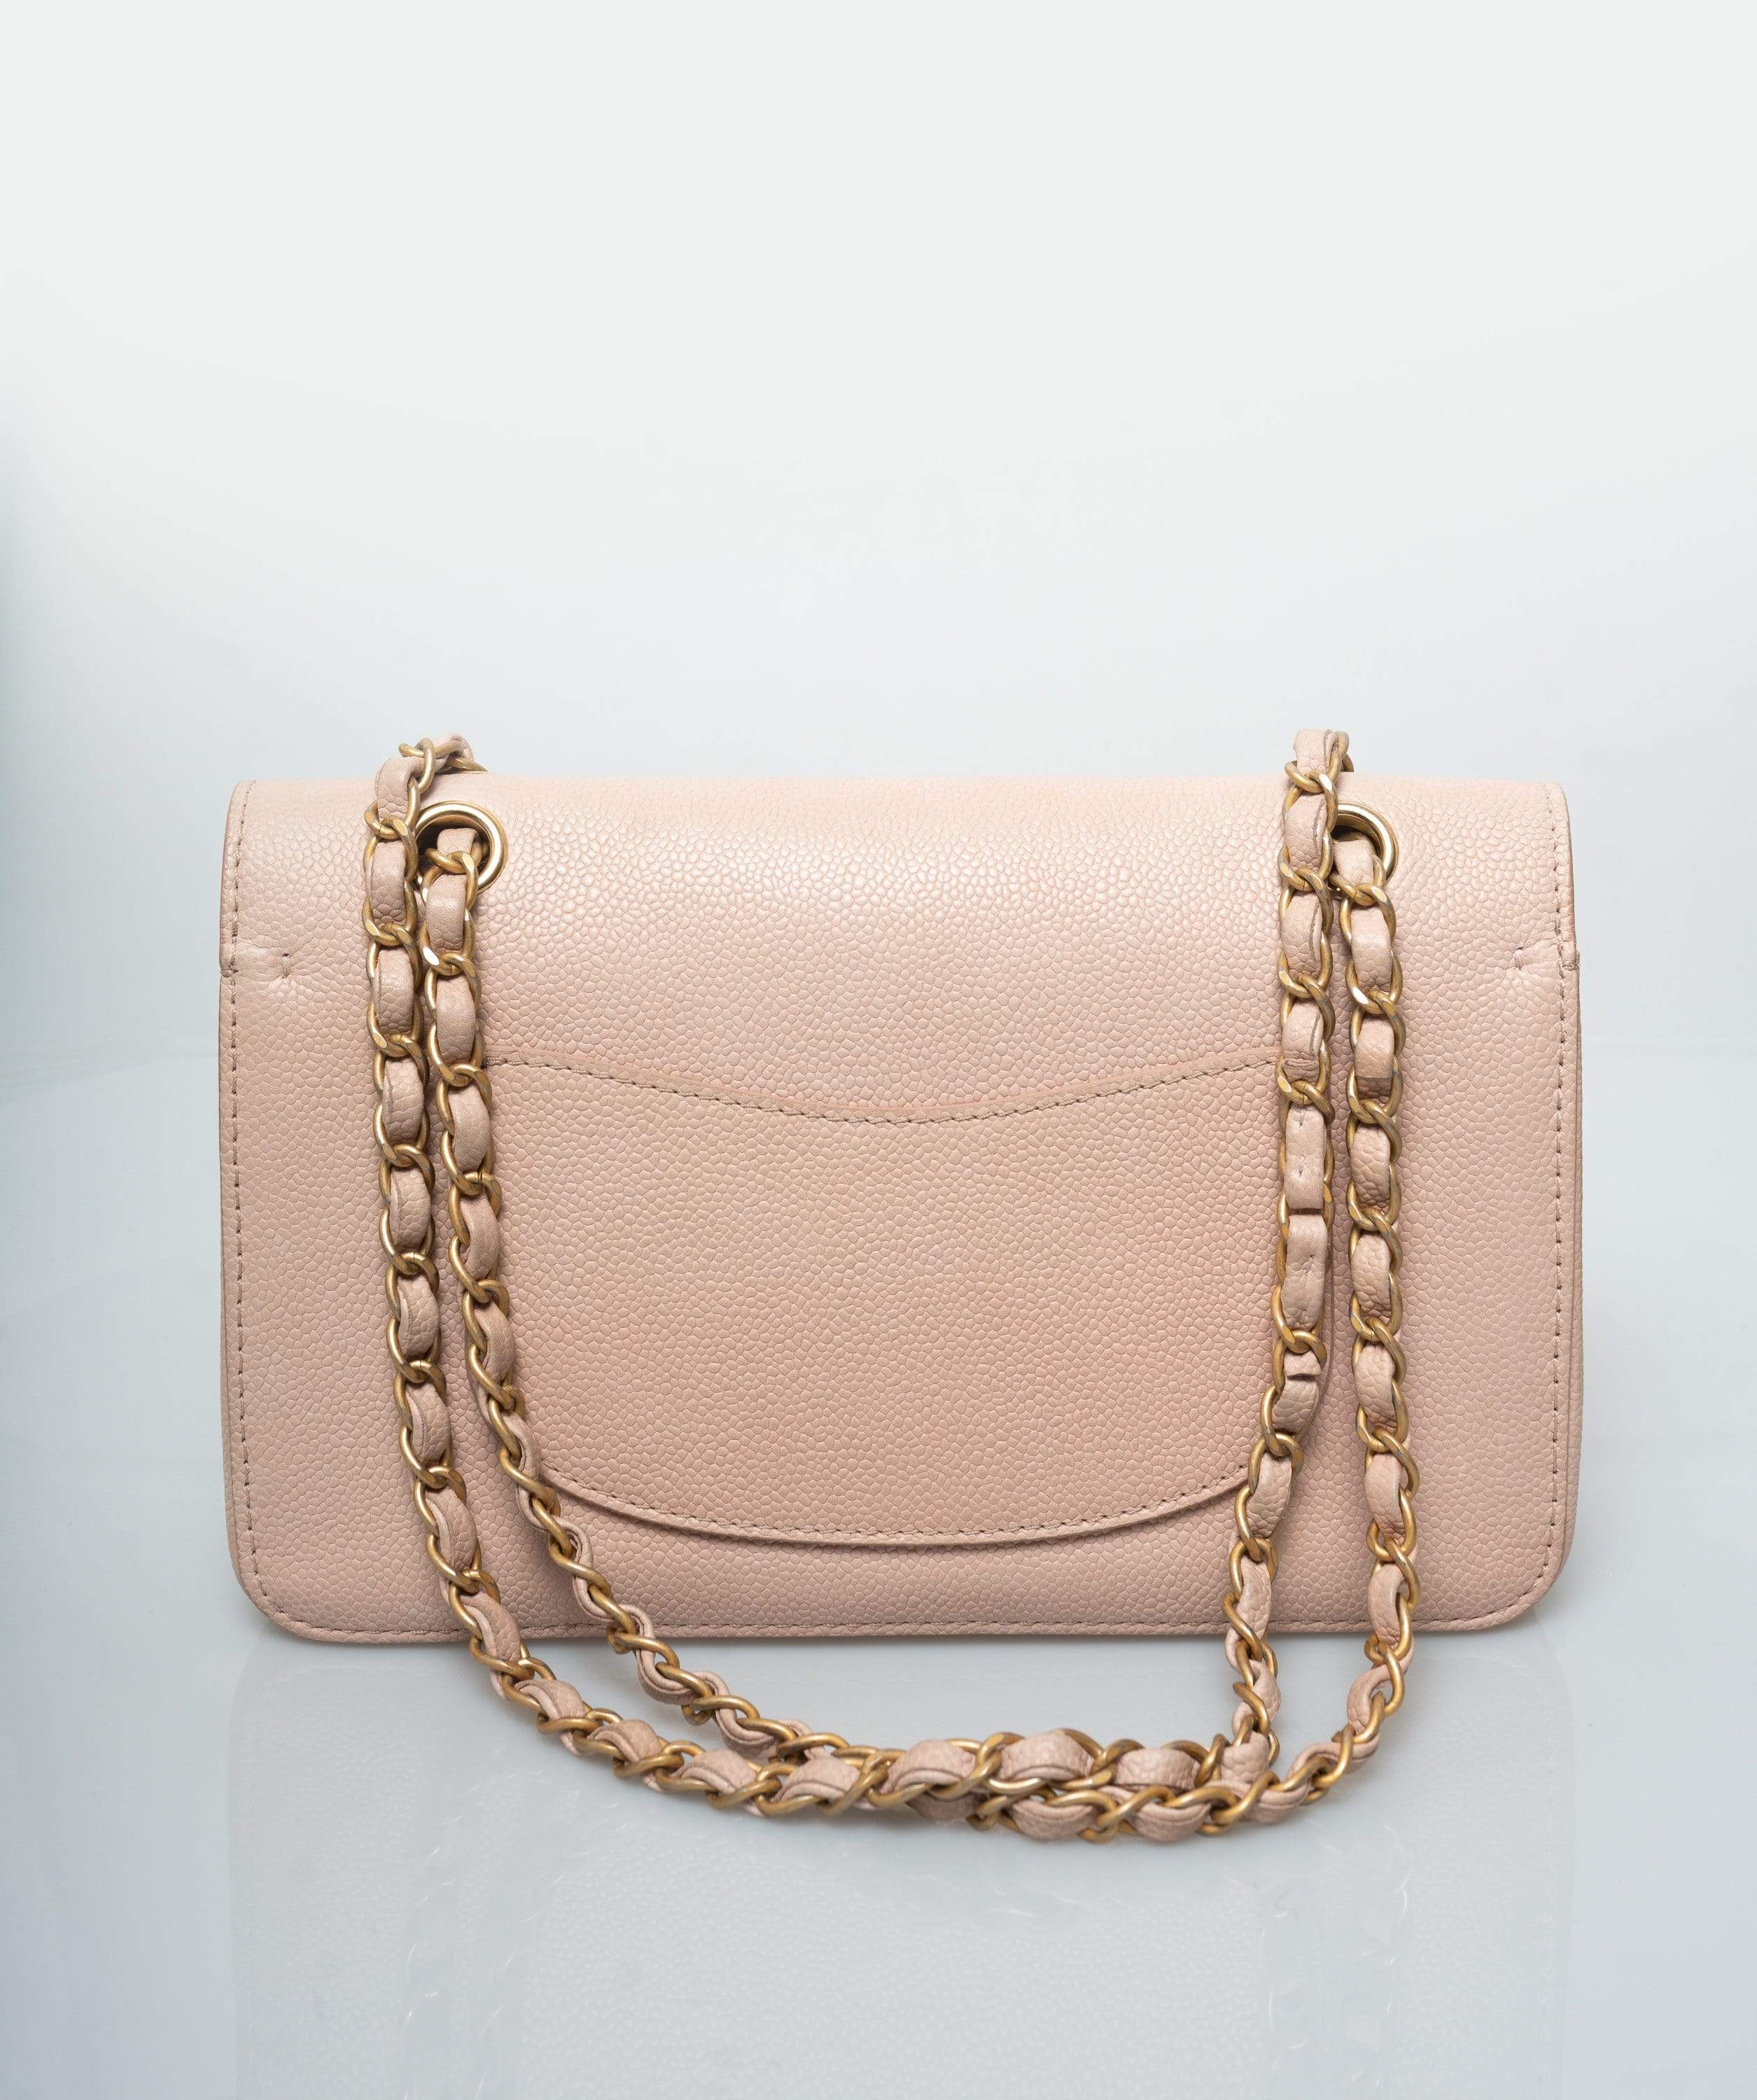 Chanel Chanel Pink Caviar Medium Classic Flap Bag GHW  - AGL1392